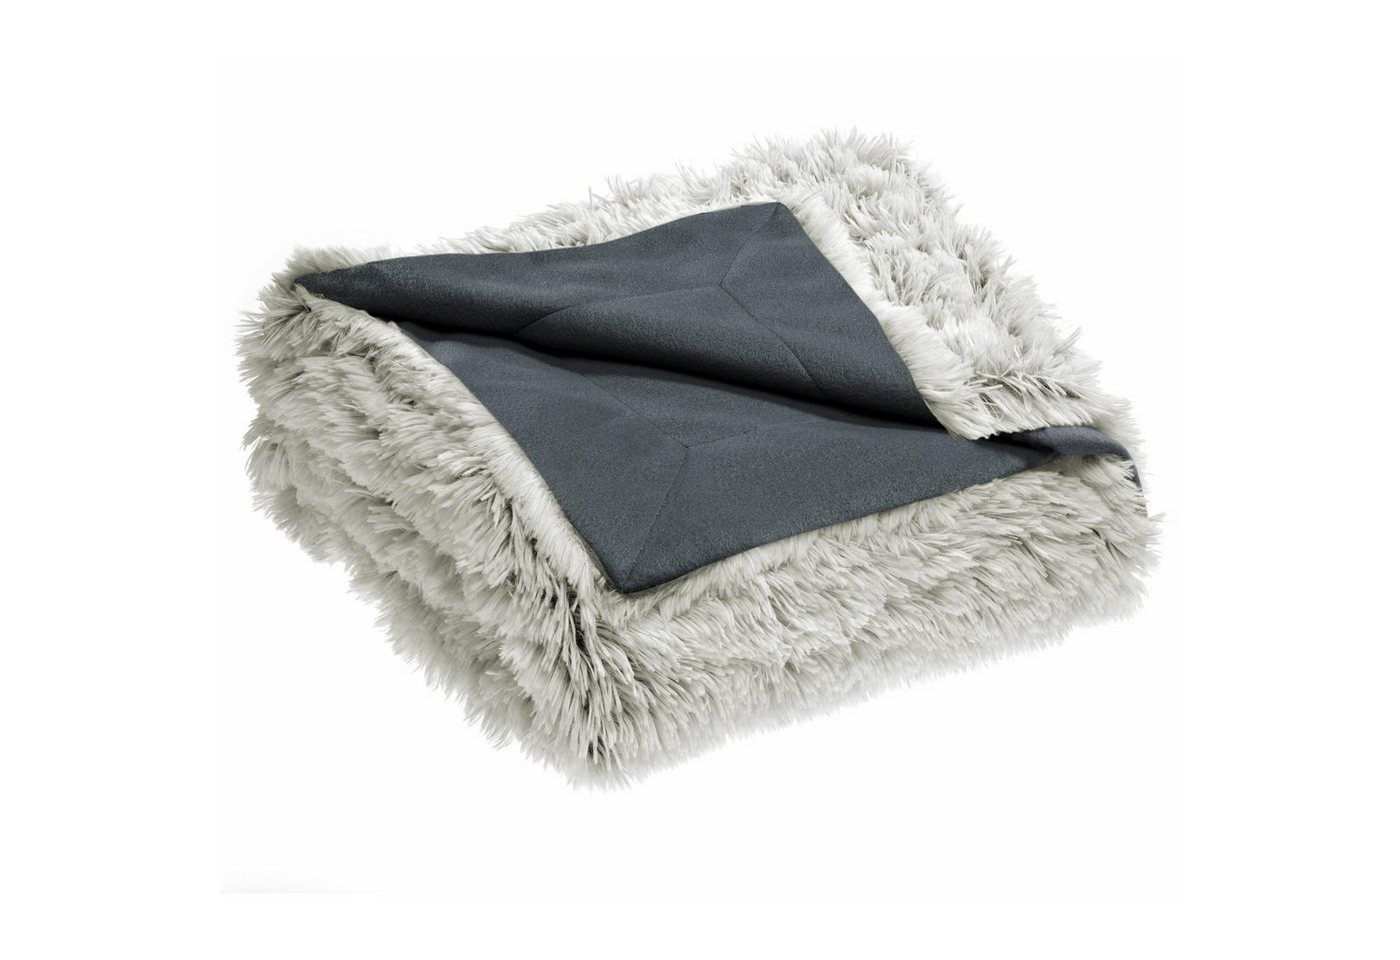 Wohndecke Shetland Kuscheldecke Tagesdecke Fleece Flausch 150x200cm creme/grau, CelinaTex, bügelfreiflauschigwarmweichWohnraumdekorationwaschbareffektvoll von CelinaTex